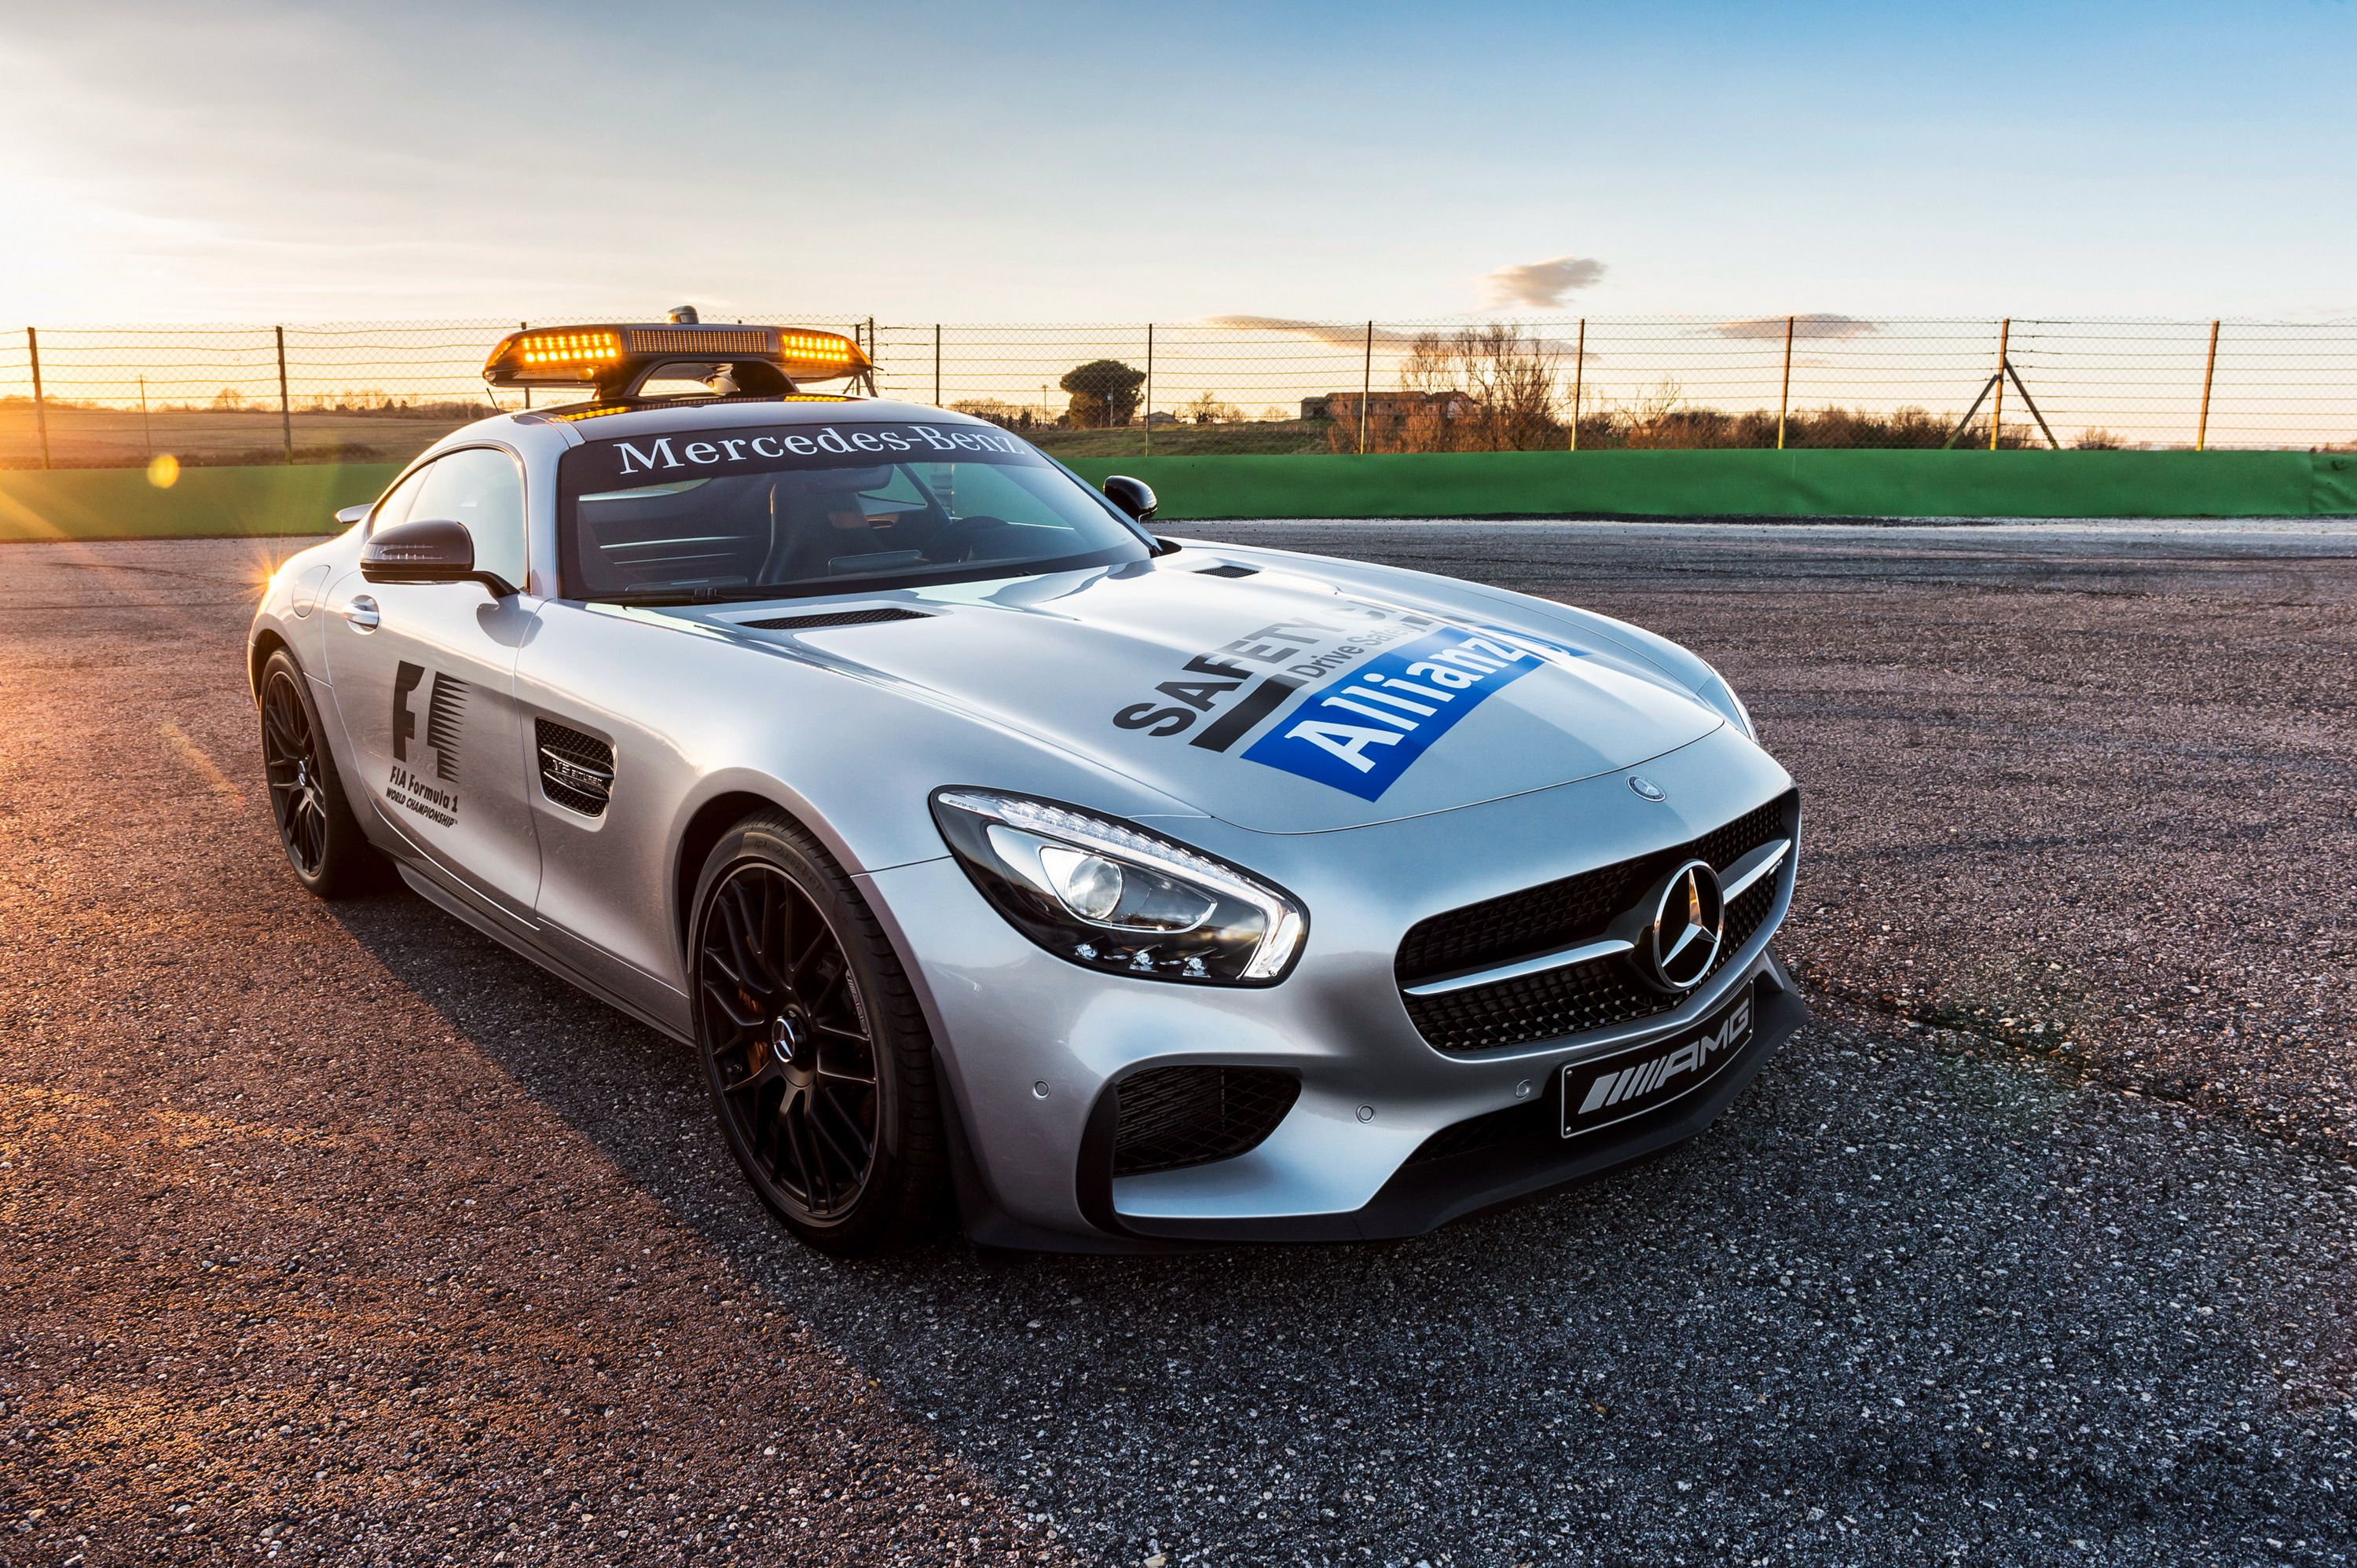 2015 Mercedes-AMG GT S F1 Safety Car